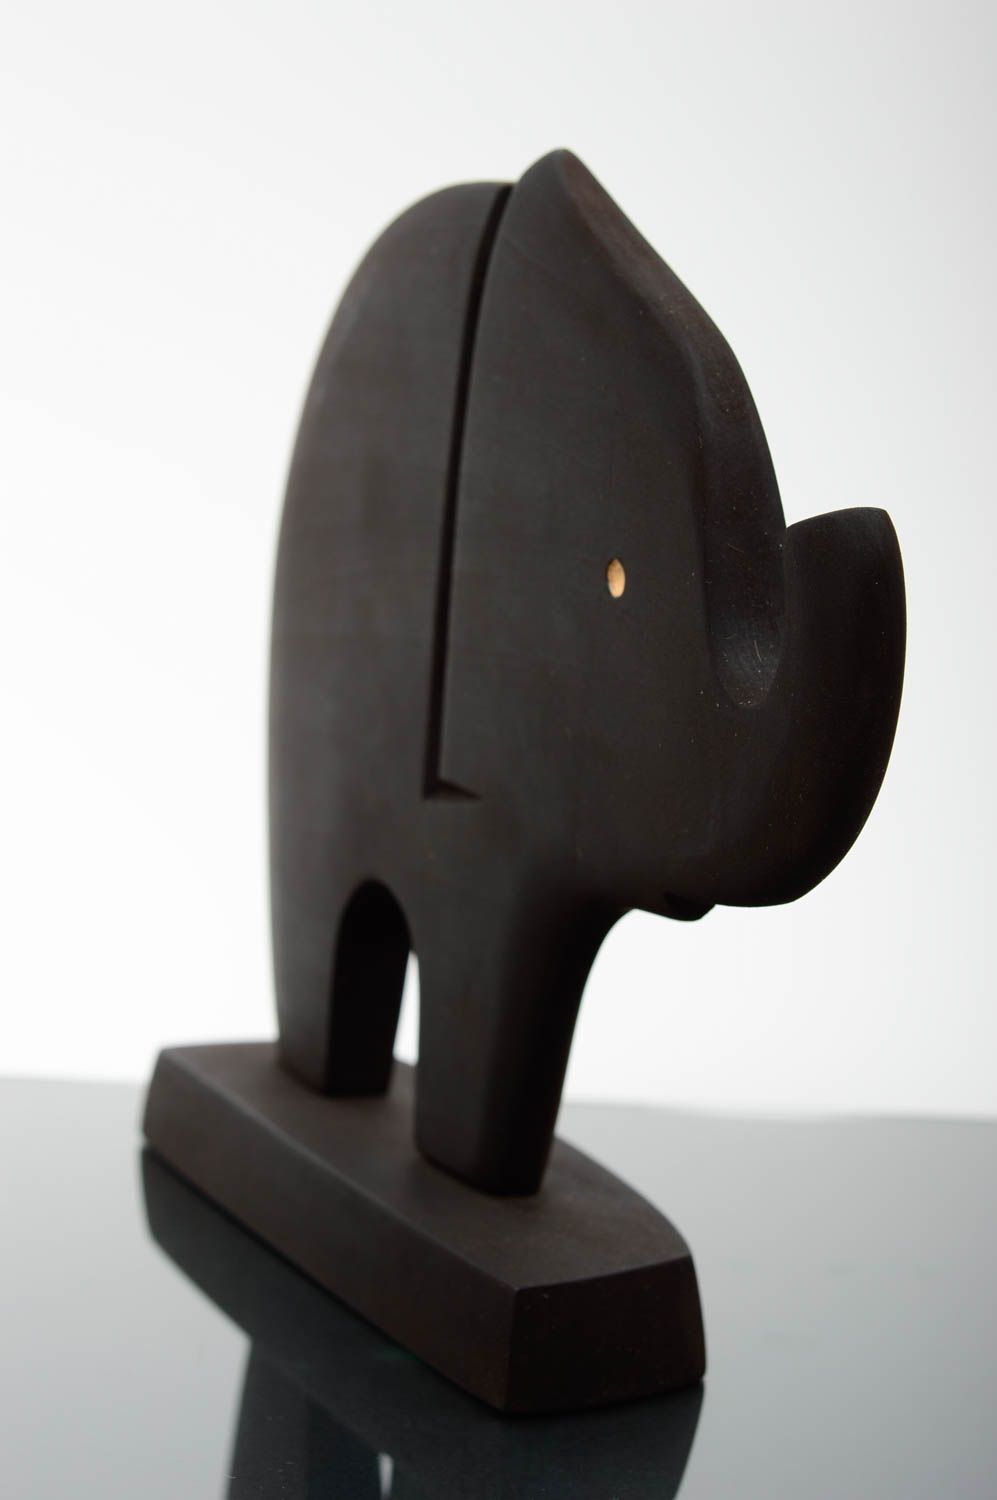 Статуэтка из дерева ручной работы экологическая для декора черный слон из ясеня фото 2